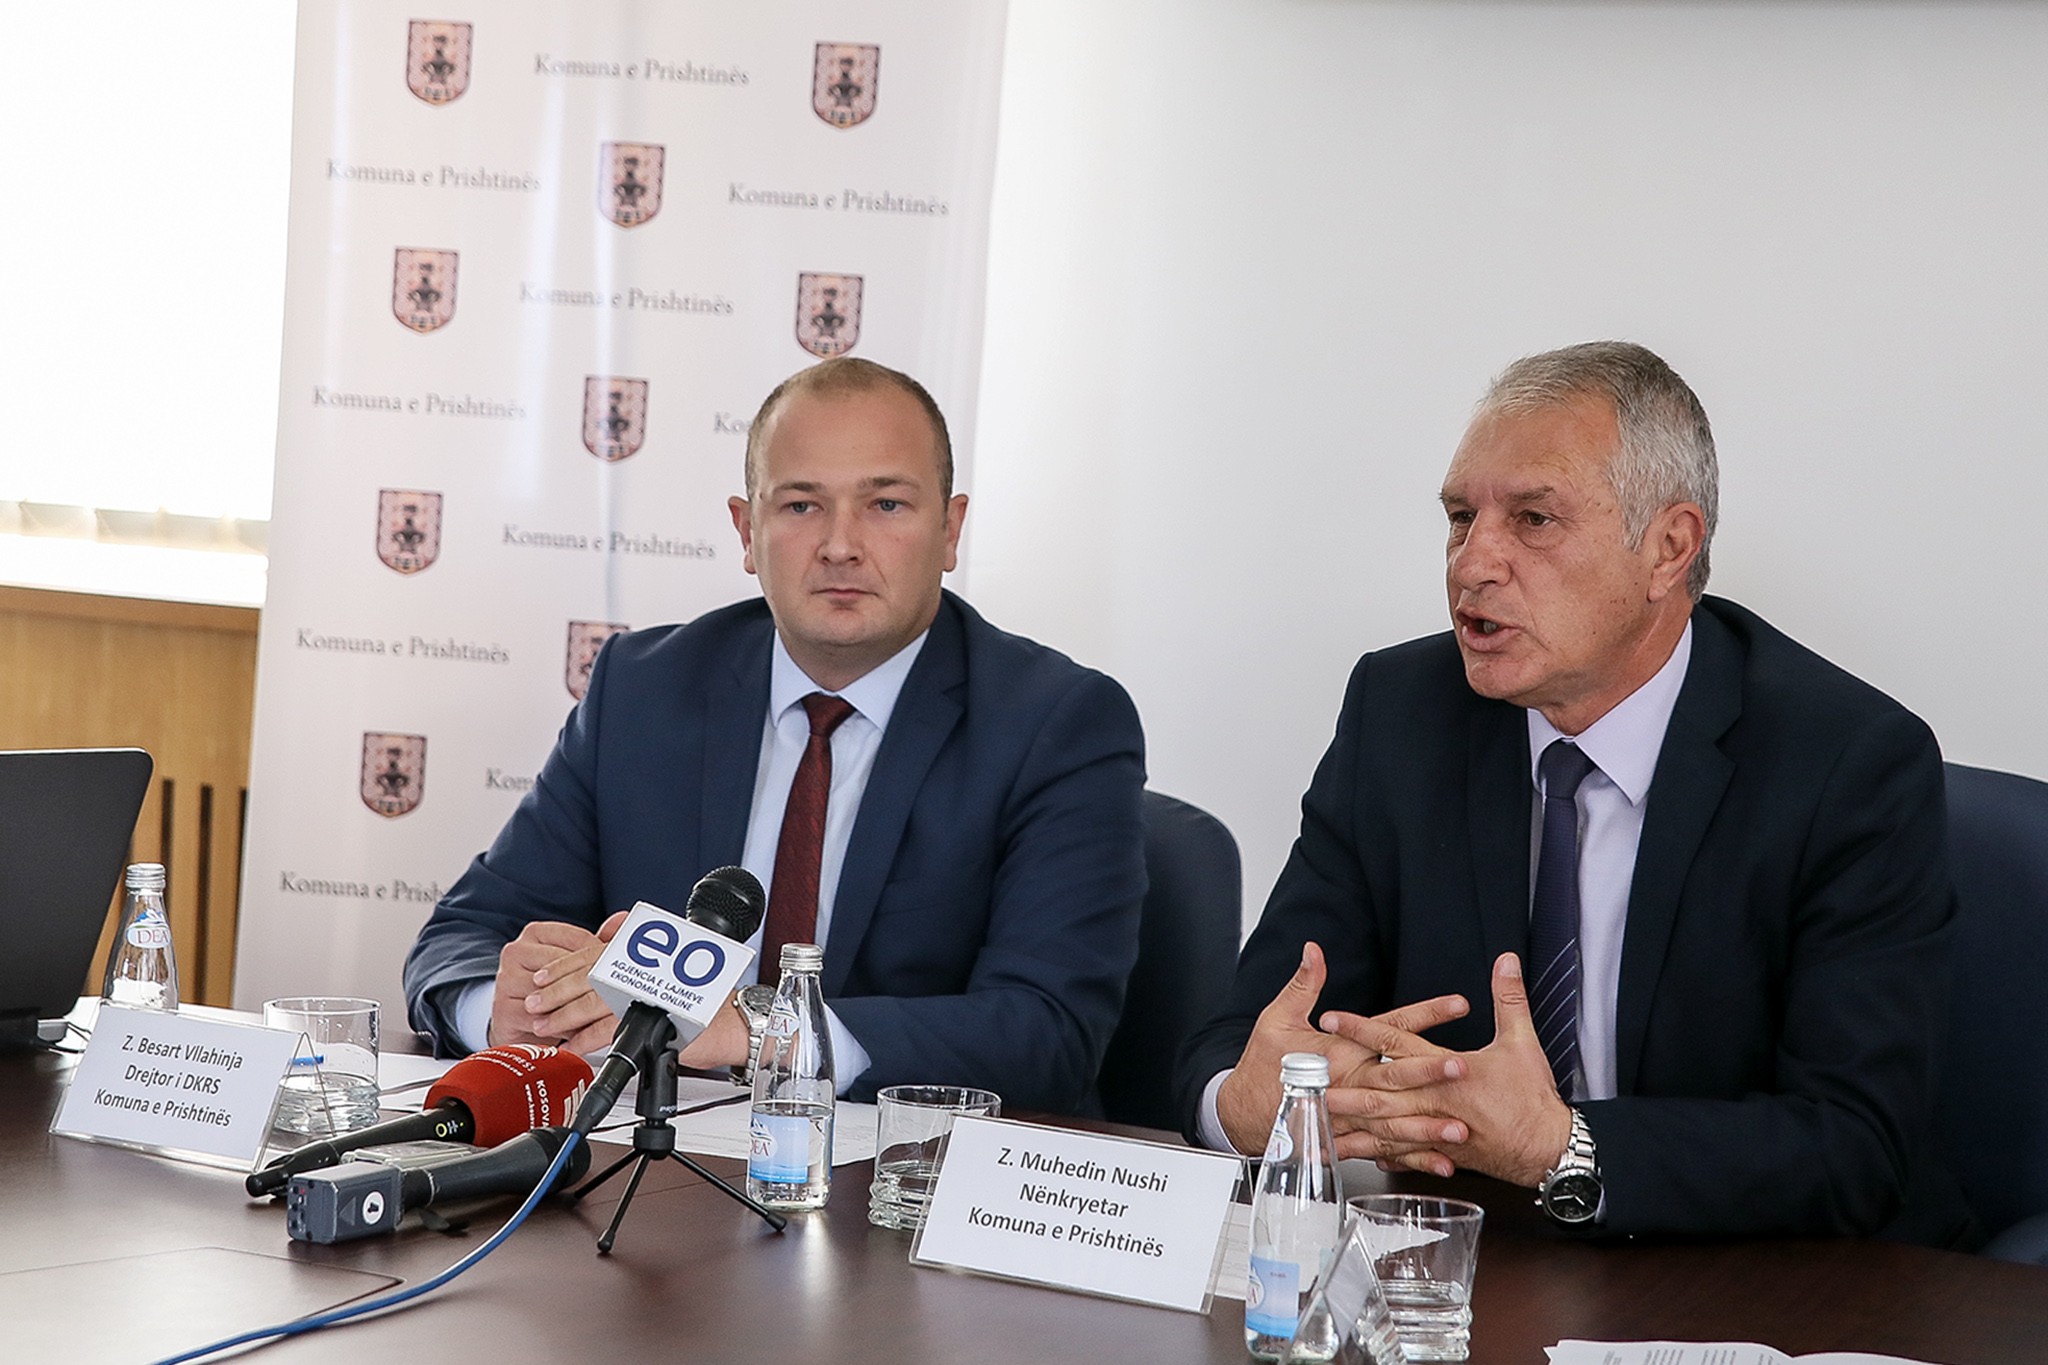 Komuna e Prishtinës me platformë të re dixhitale për menaxhimin e subvencioneve  